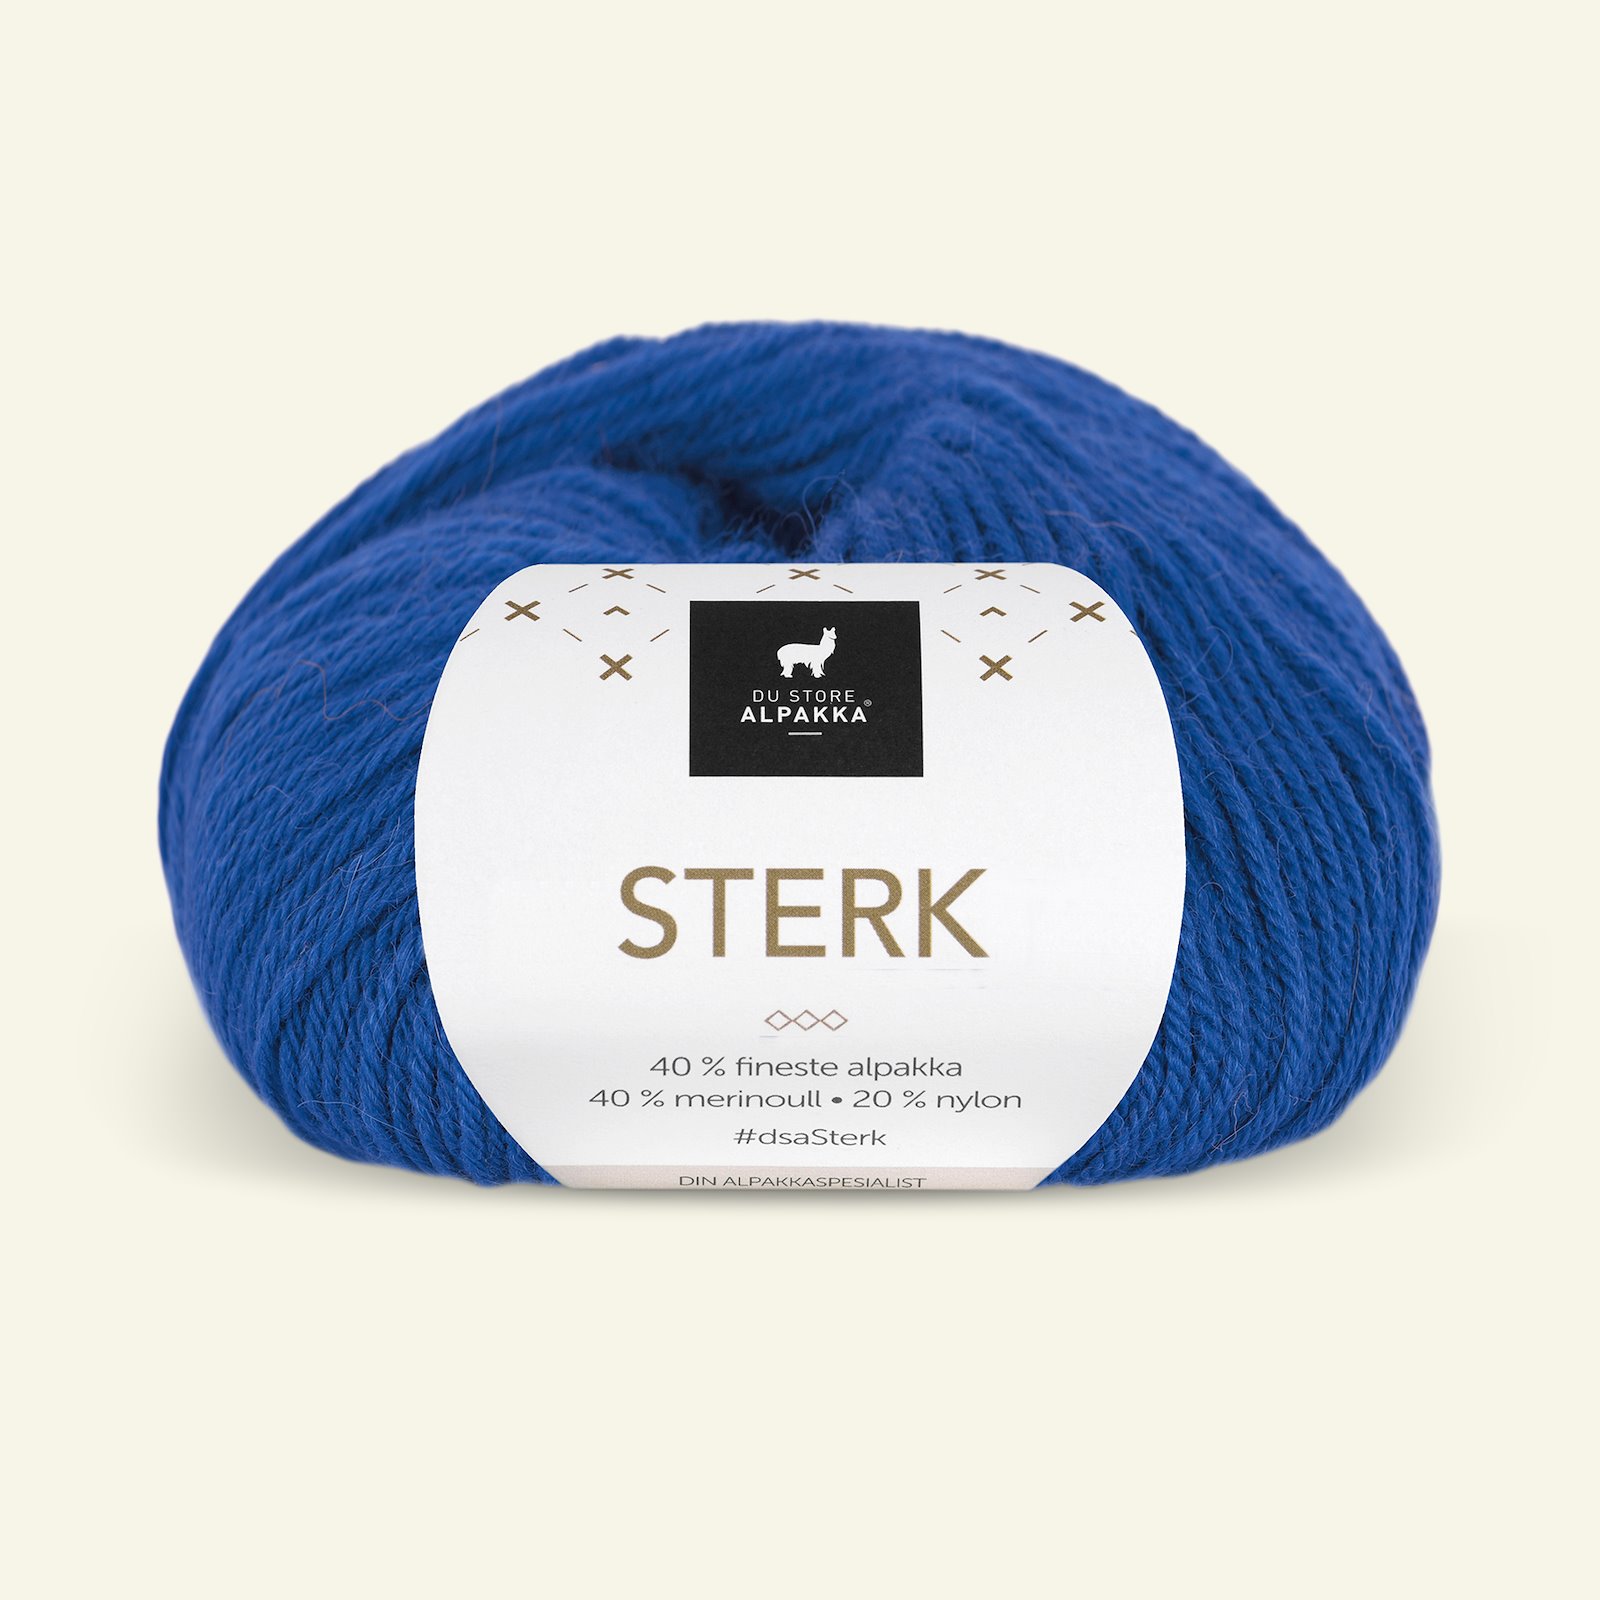 Du Store Alpakka, alpaca merino blandingsgarn, "Sterk", cobolt blå (904) 90000696_pack